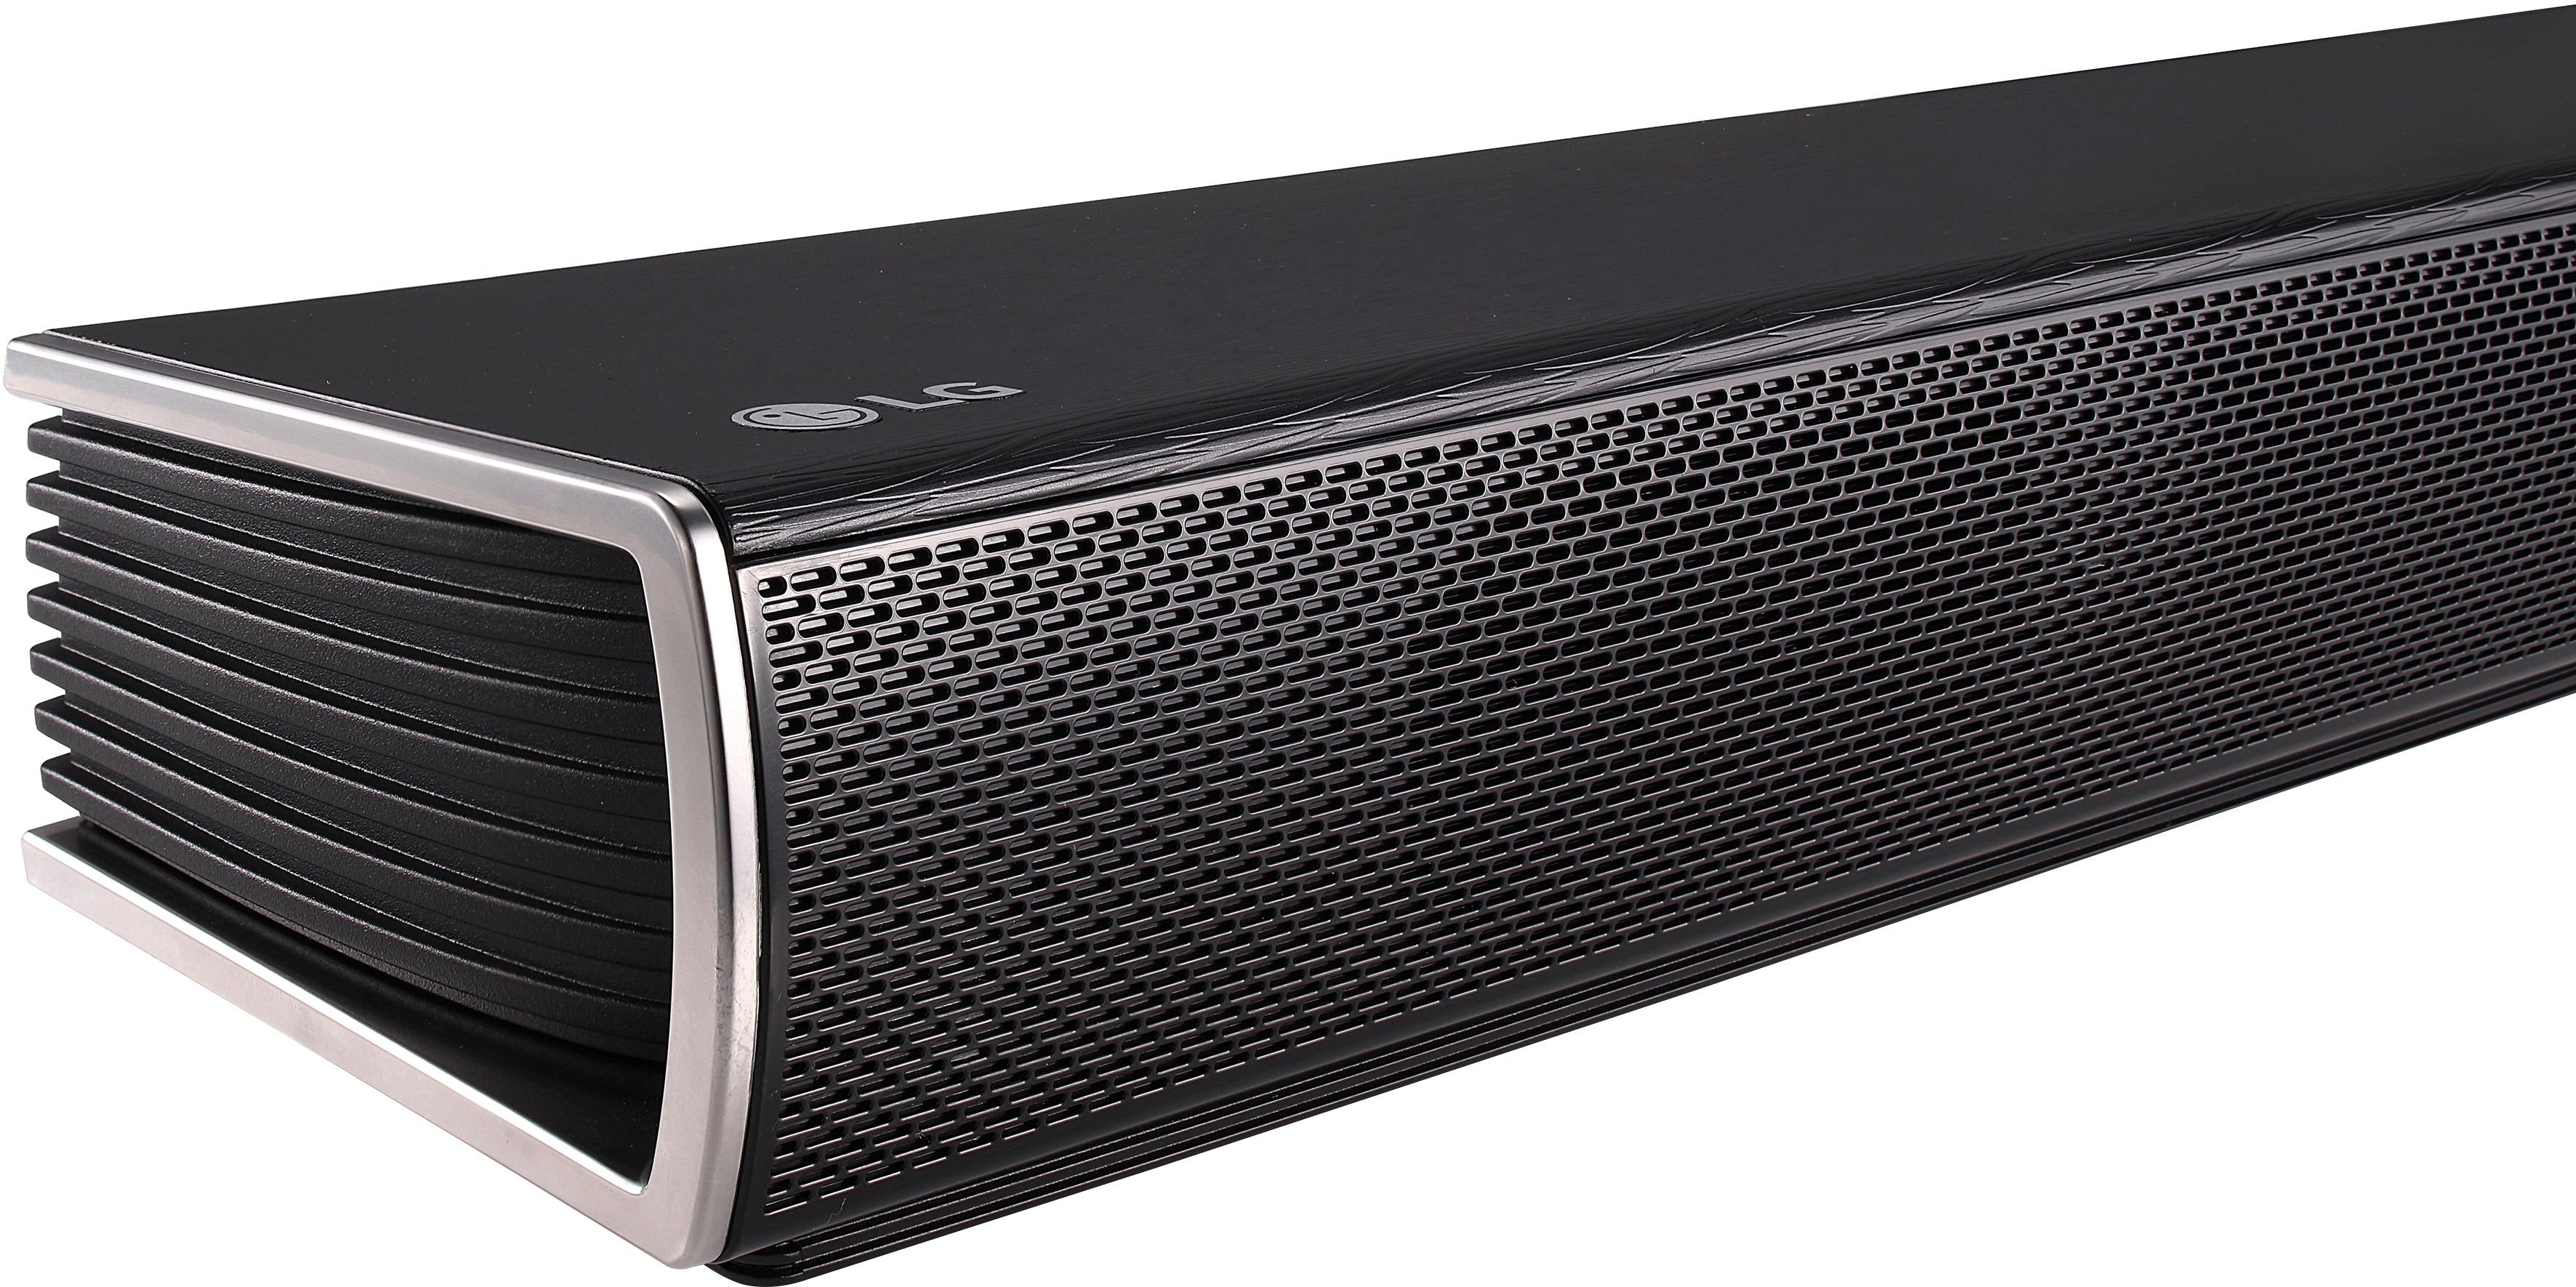 LG 4.1 Channel 420W Soundbar Surround System with Wireless Speakers - SLM4R  